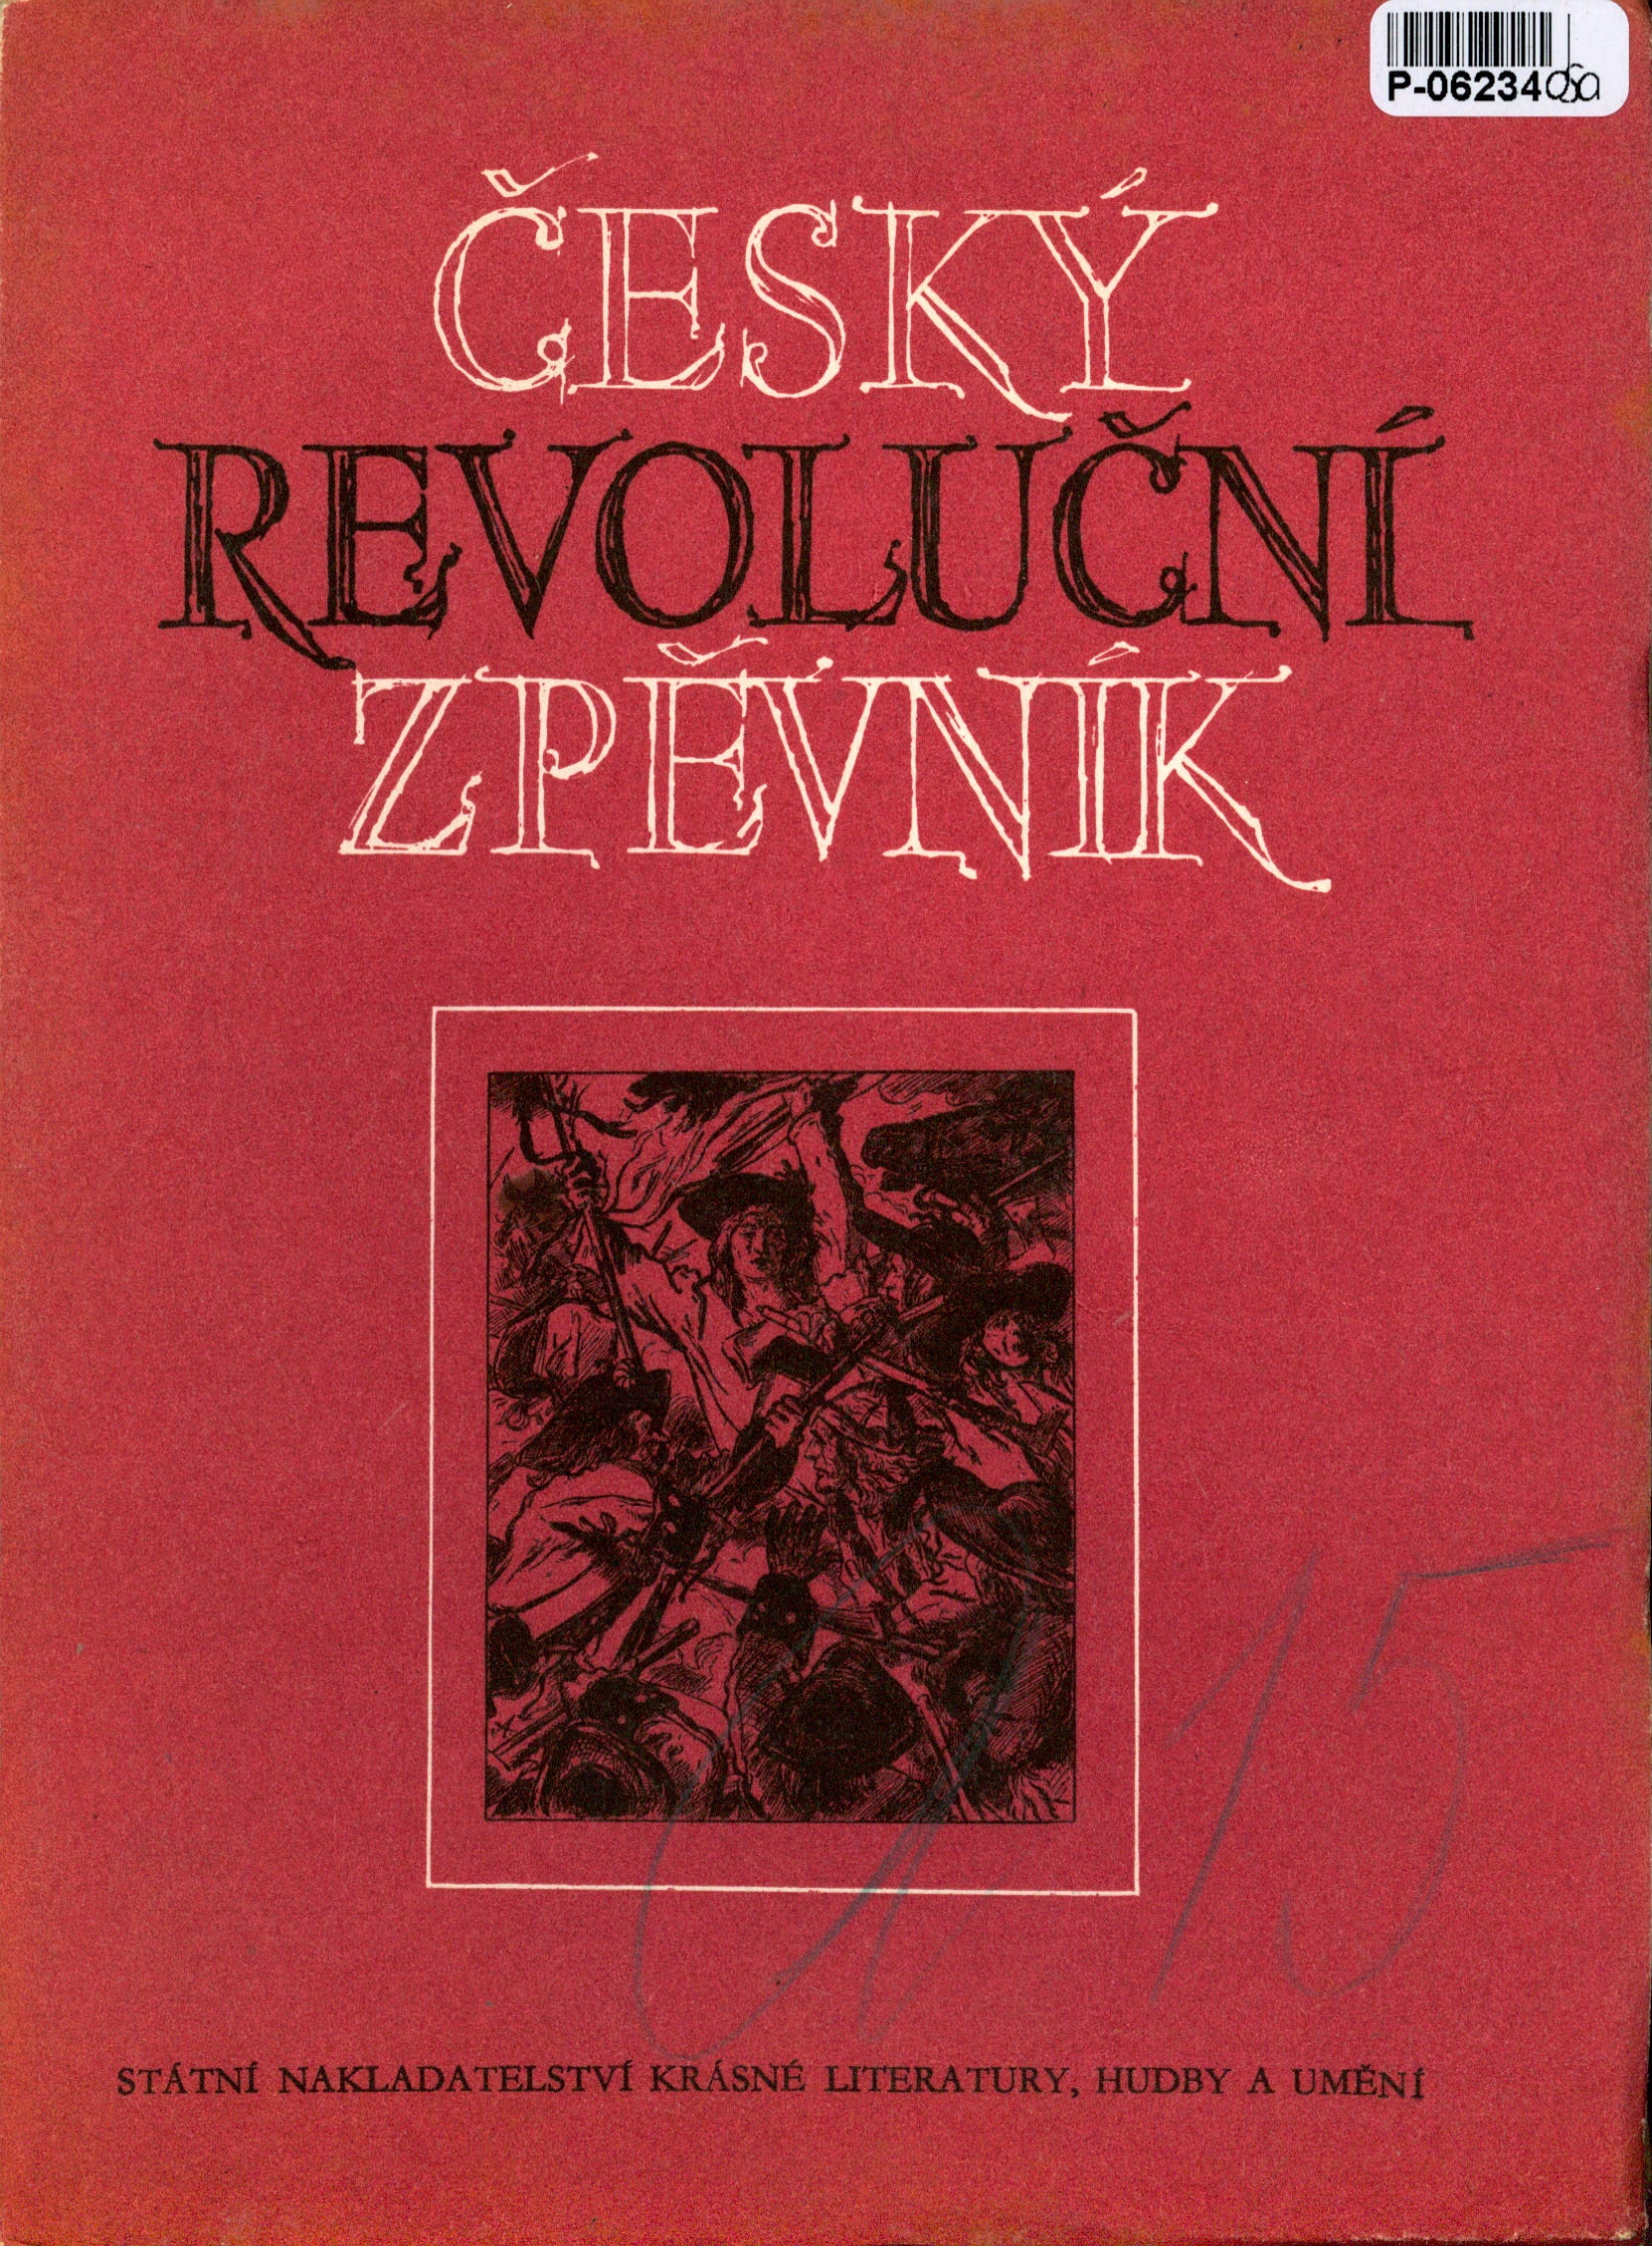 Český revoluční zpěvník